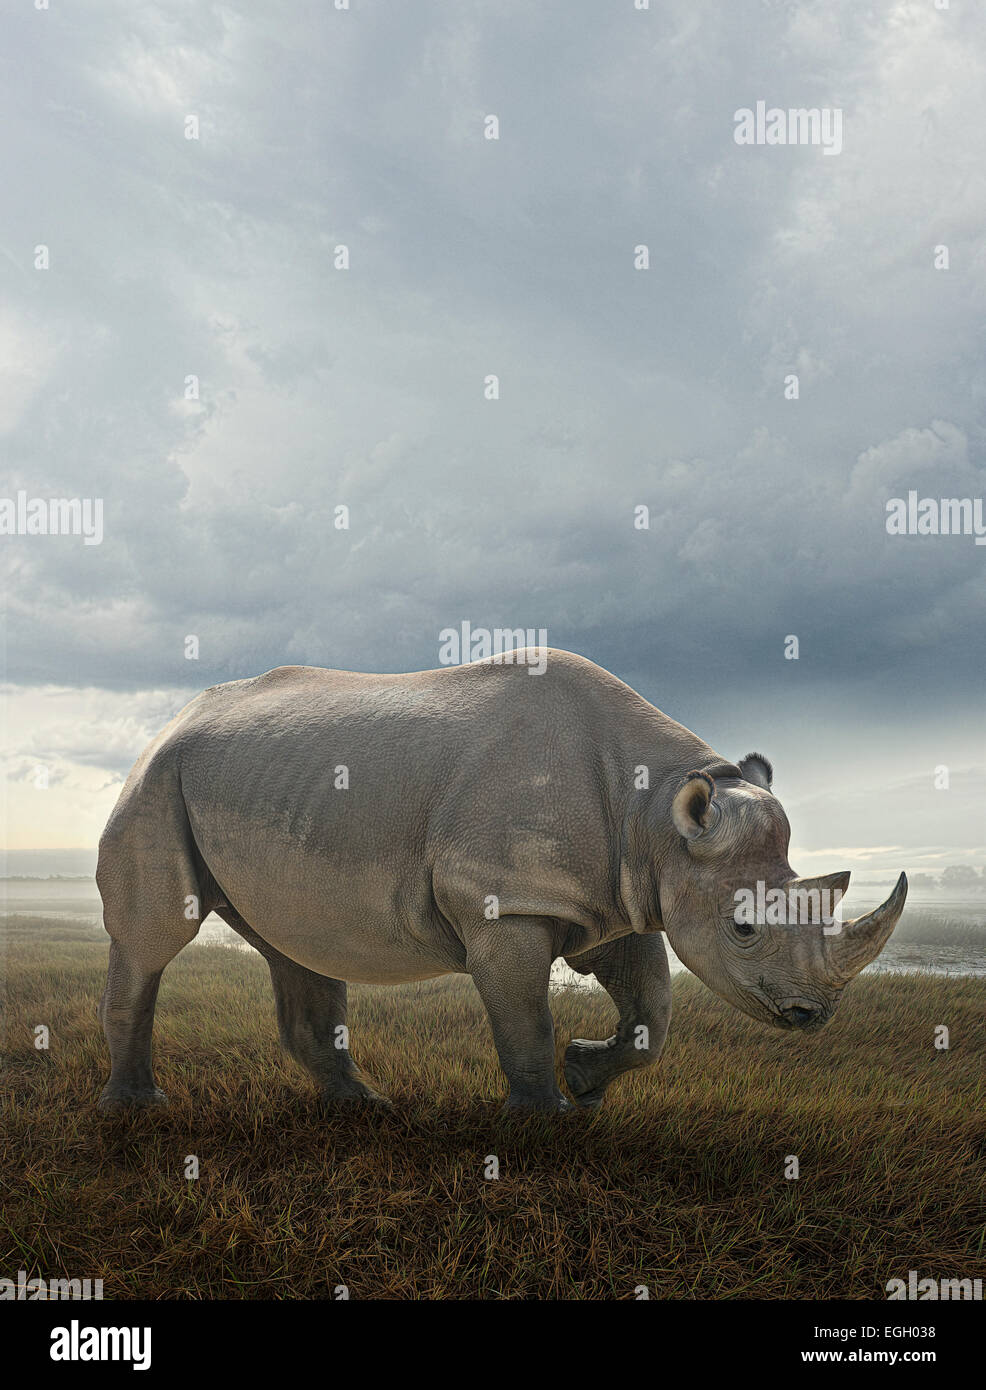 White rhinoceros on the plains Stock Photo